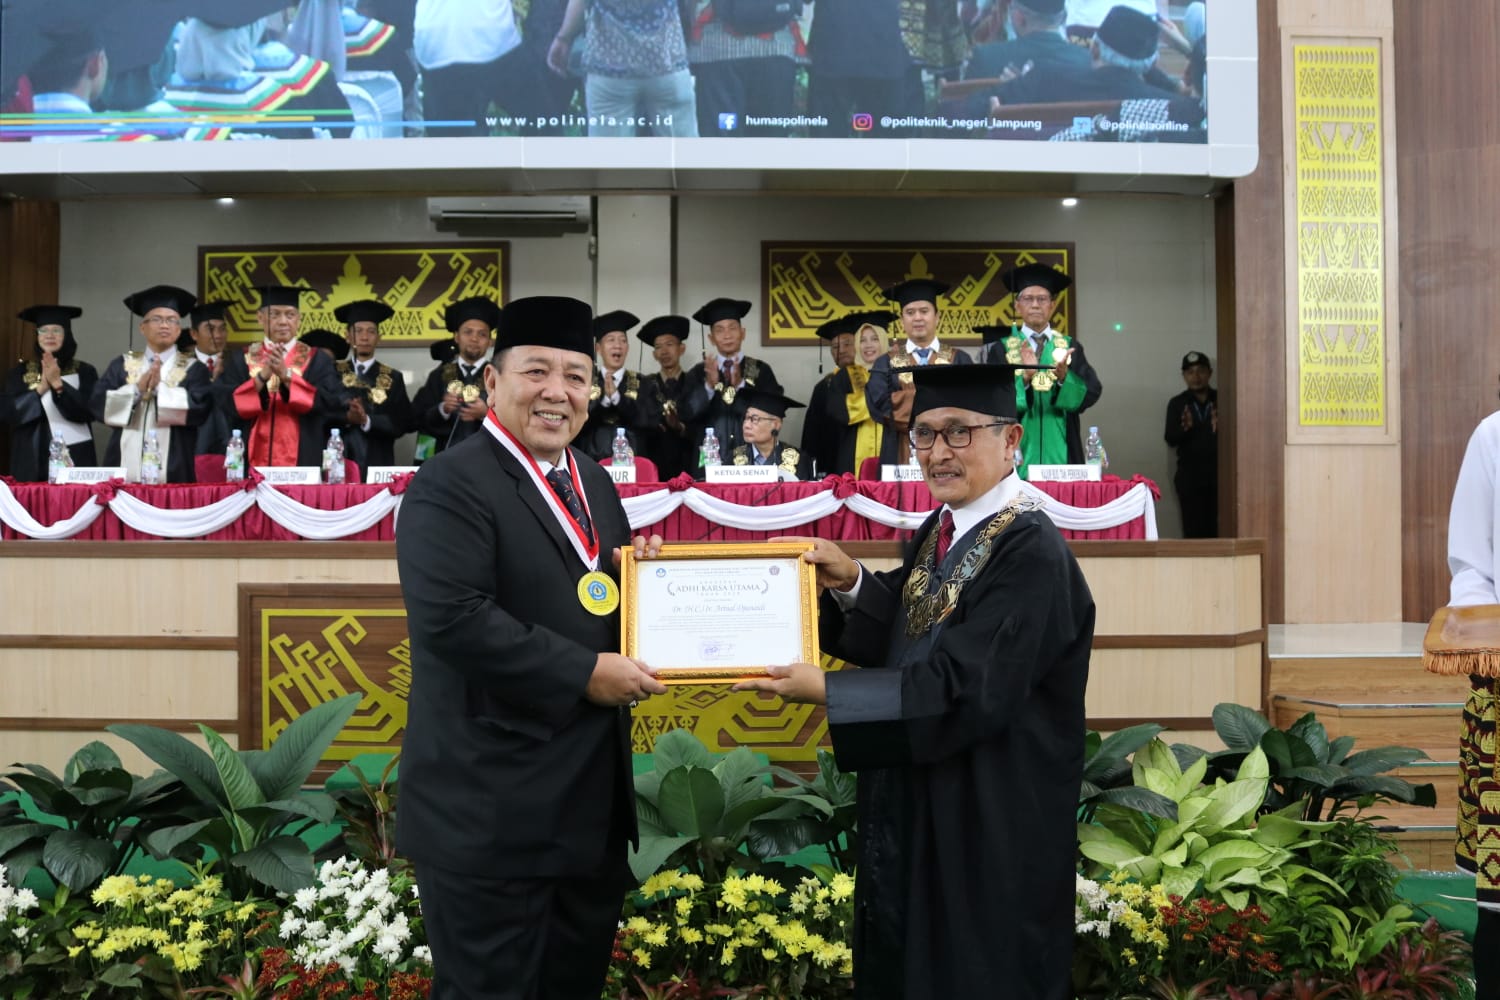 Berkontribusi Memajukan Pendidikan di Lampung, Arinal Dianugerahi Adhi Karsa Utama oleh Polinela